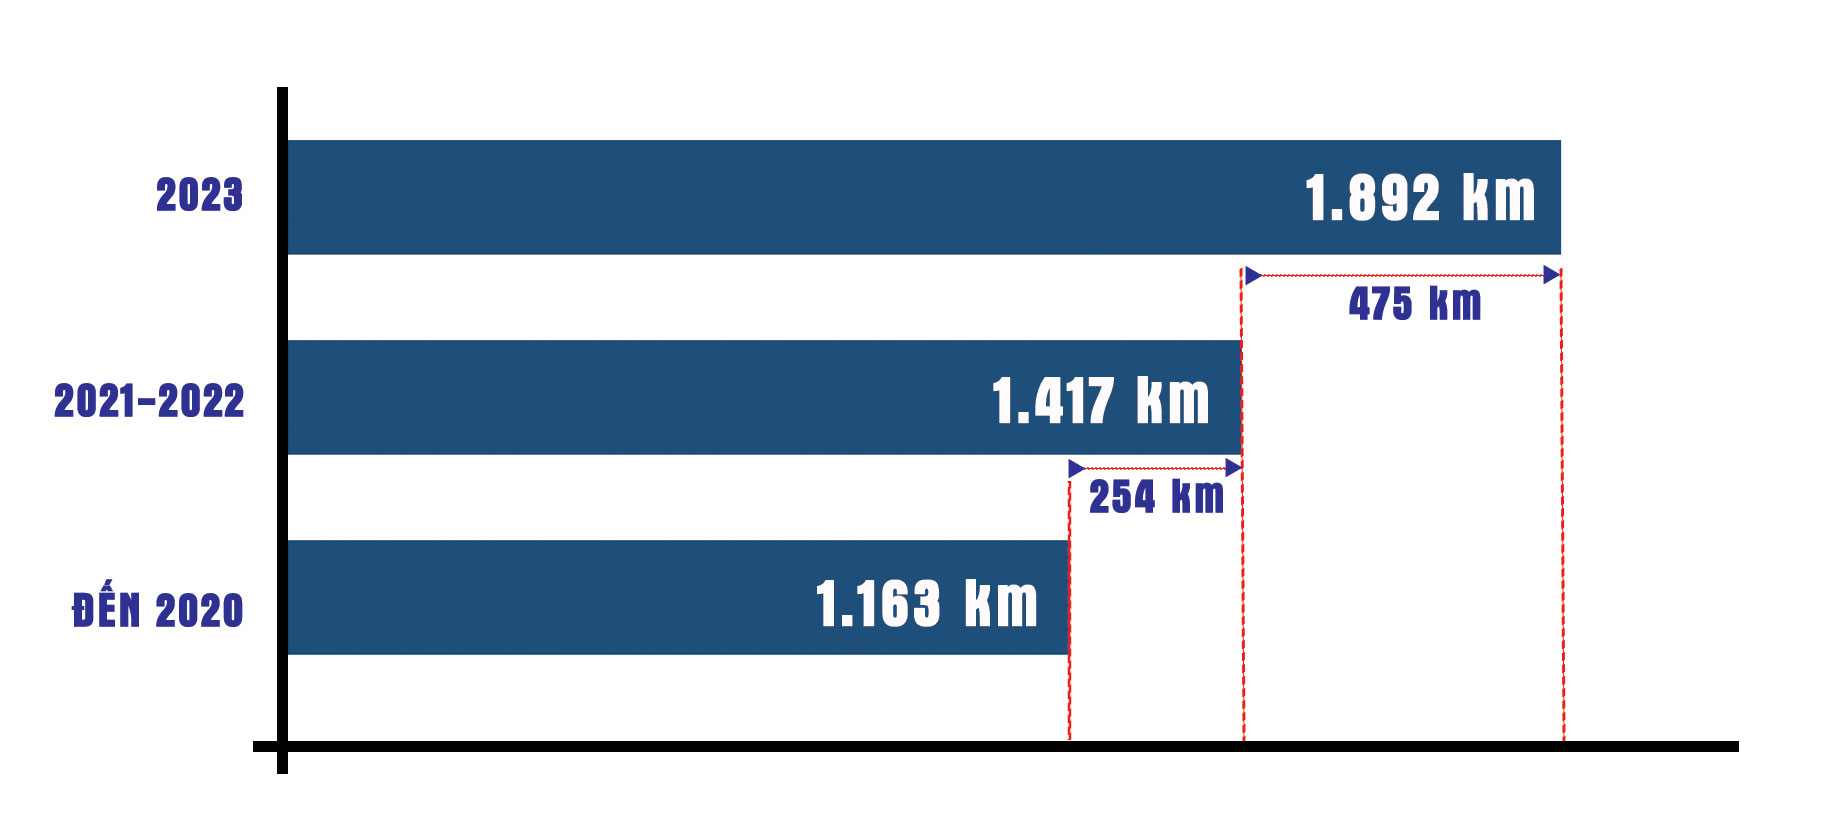 Biểu đồ thể hiện chỉ trong khoảng 3 năm, nước ta đưa vào khai thác gần 730 km đường cao tốc Nguồn: BỘ GTVT, Đồ họa: ANH THANH